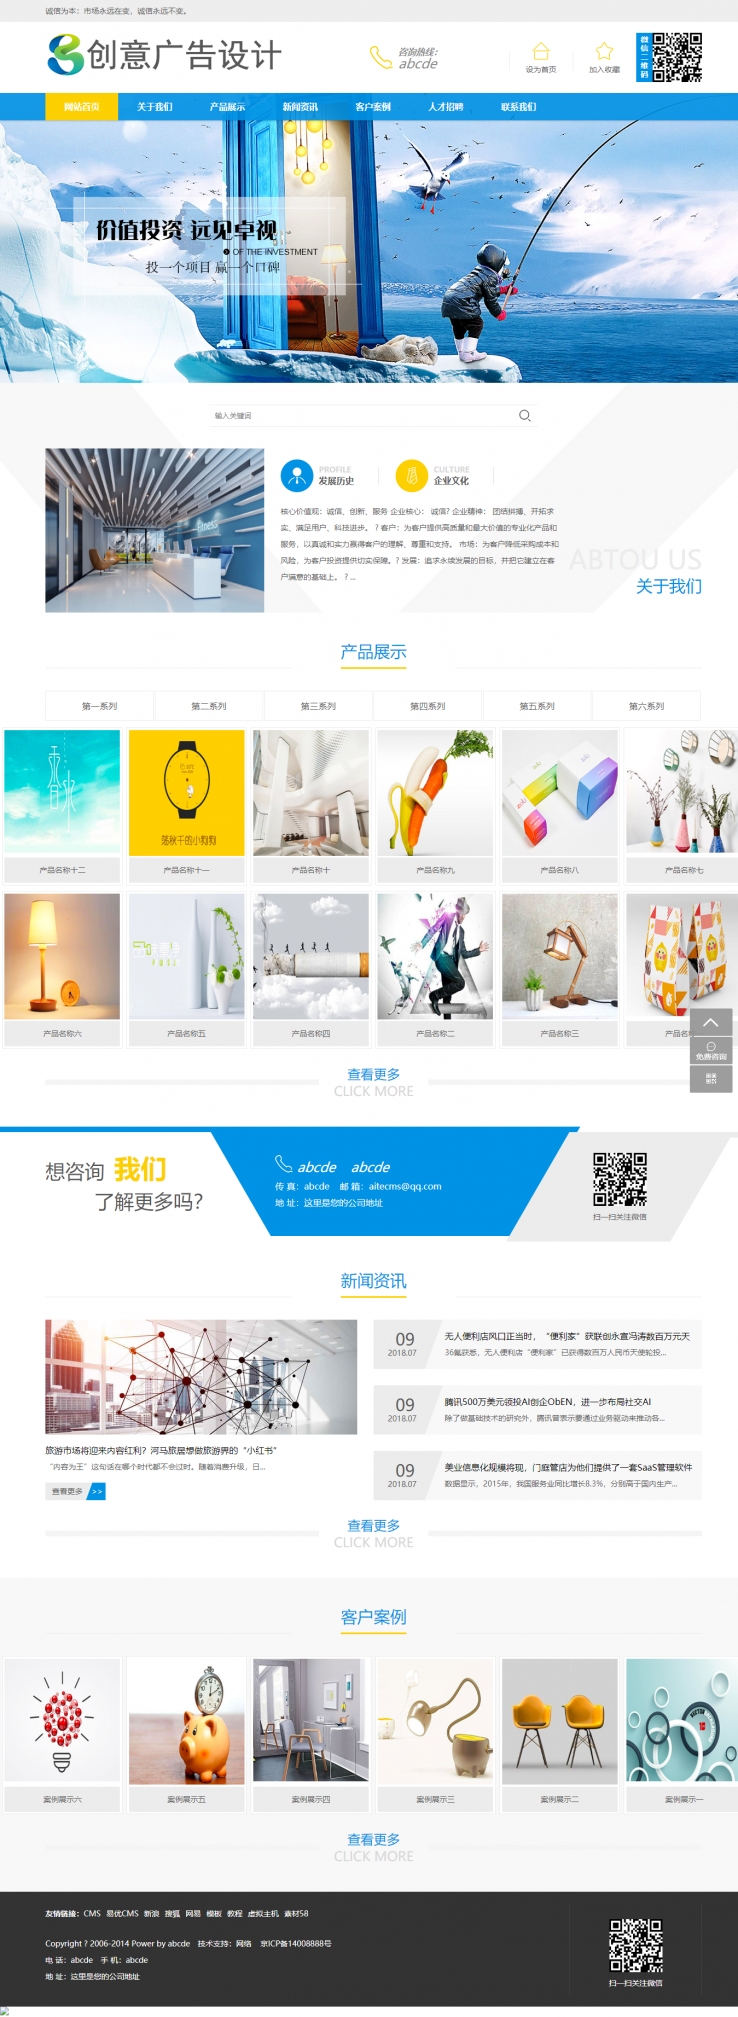 蓝色简洁风格的创意广告设计企业网站源码下载